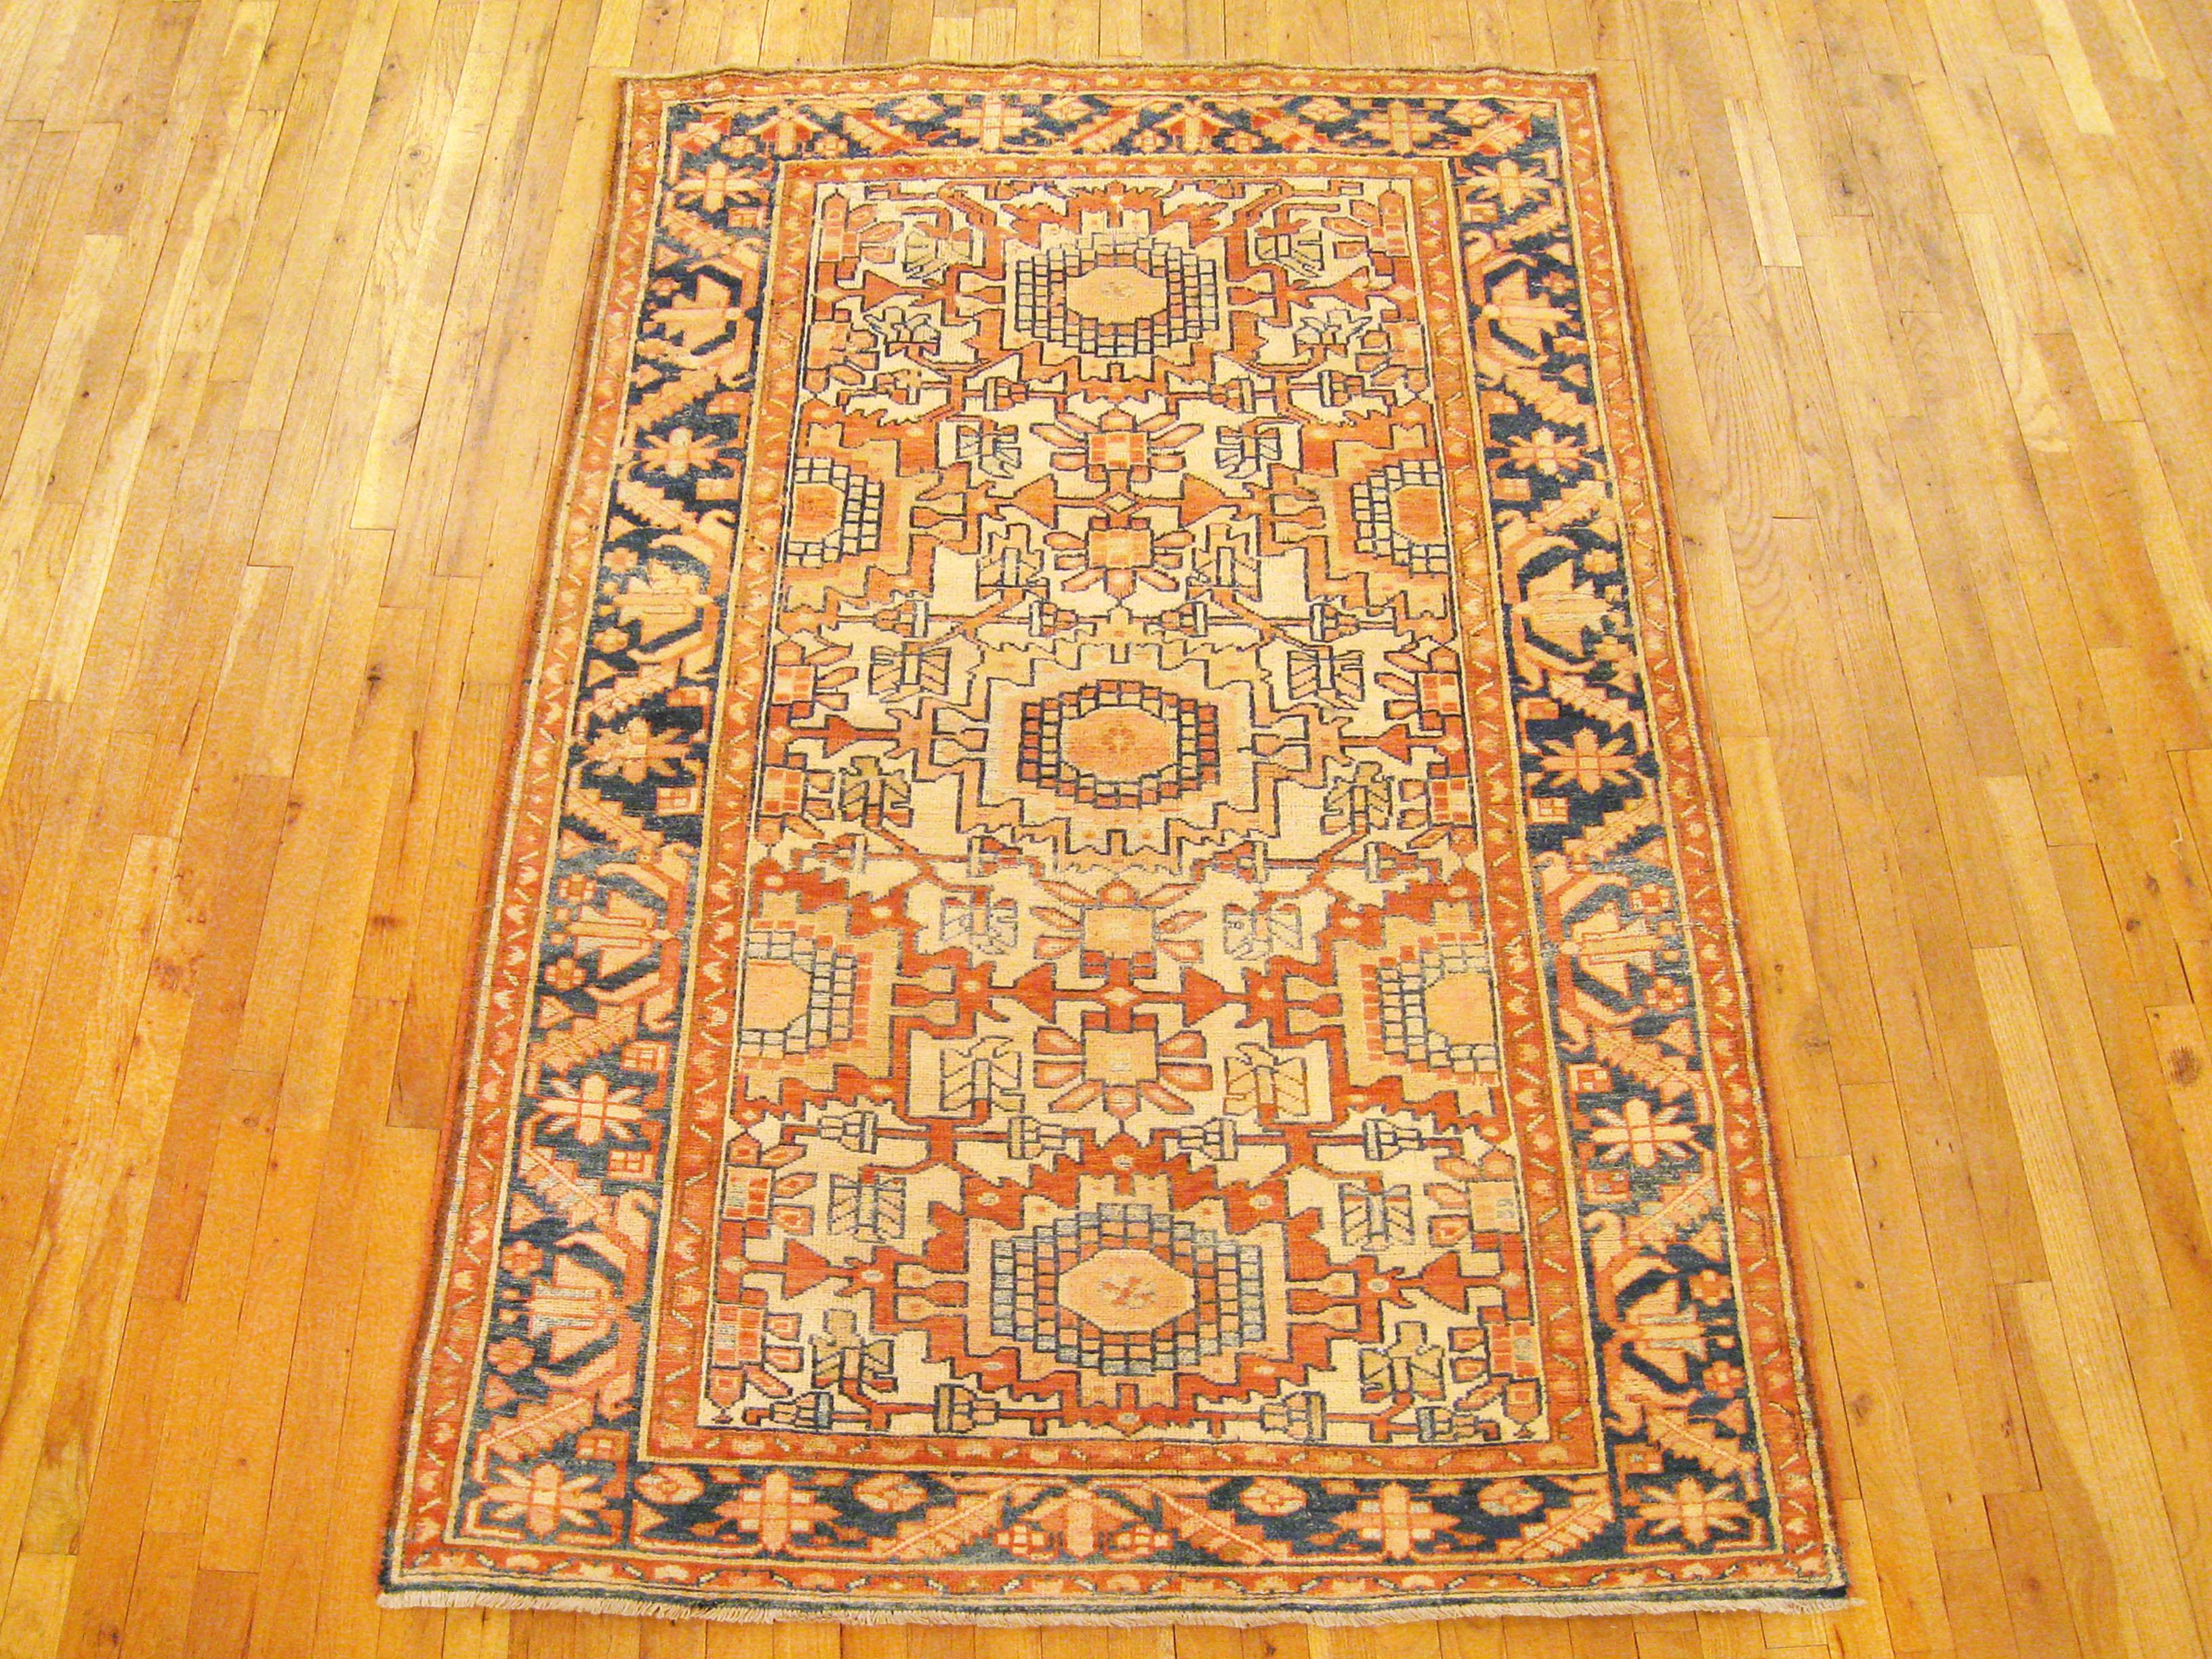 Vintage Persisch Hamadan Orientteppich, kleine Größe

Ein alter persischer Hamadan Orientteppich in kleiner Größe, Größe 6'8